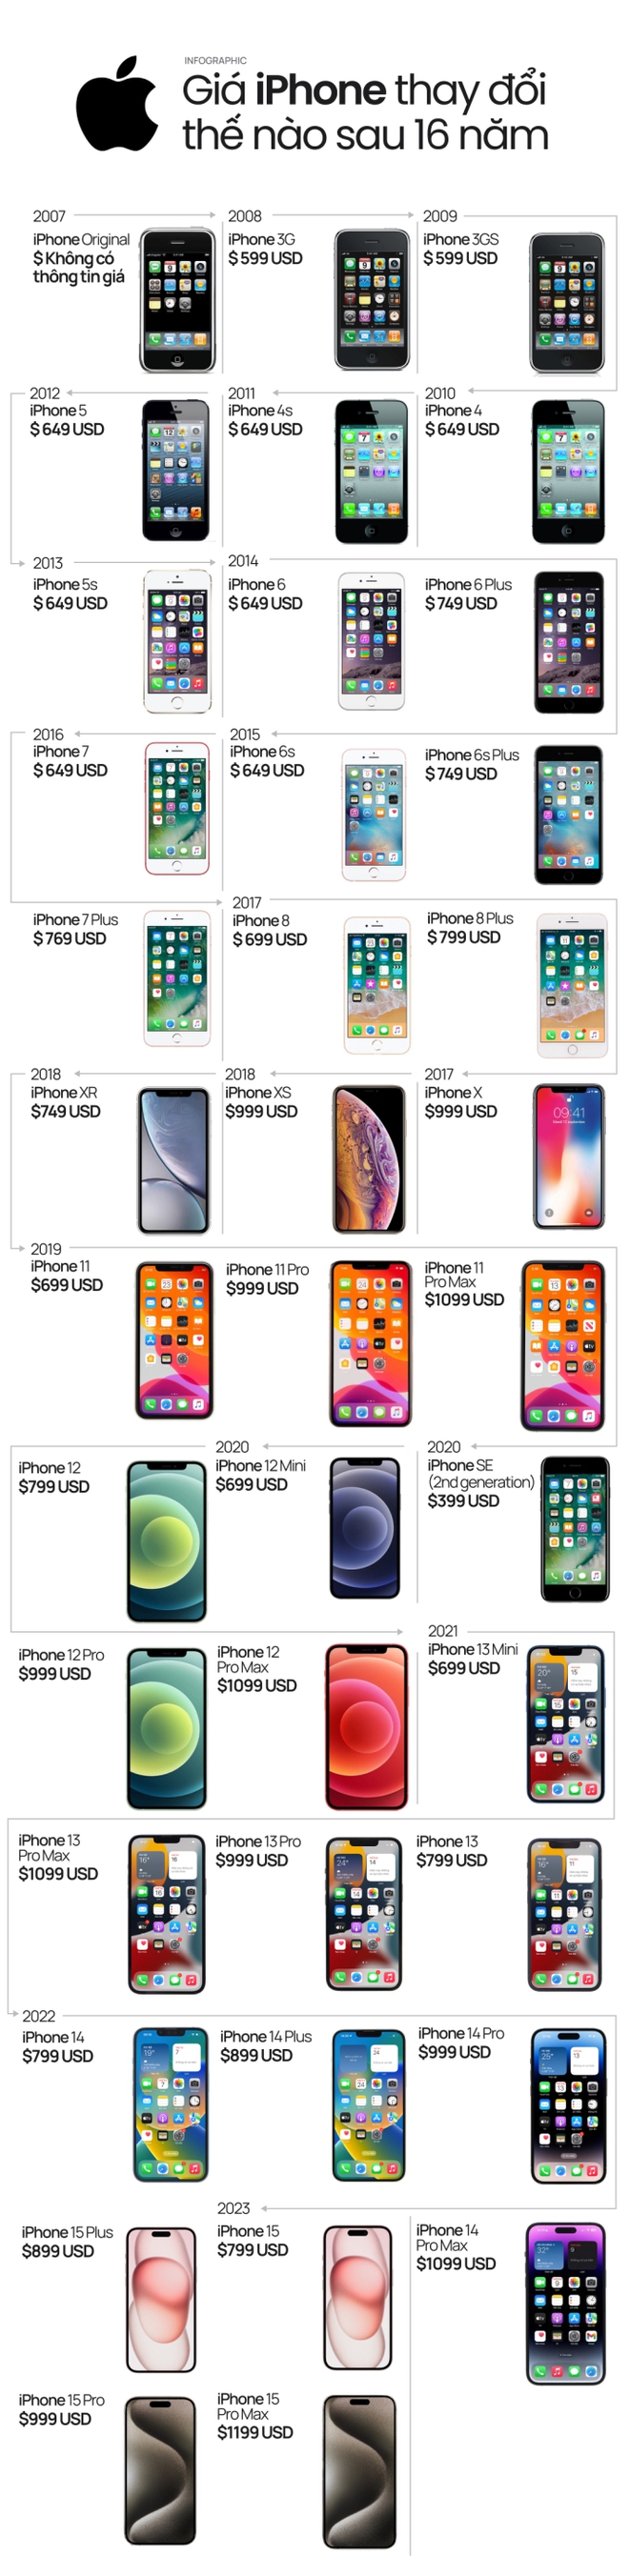 [Infographic] 16 năm có mặt trên thị trường, giá iPhone đã trải qua nhiều thay đổi đáng kể - Ảnh 1.